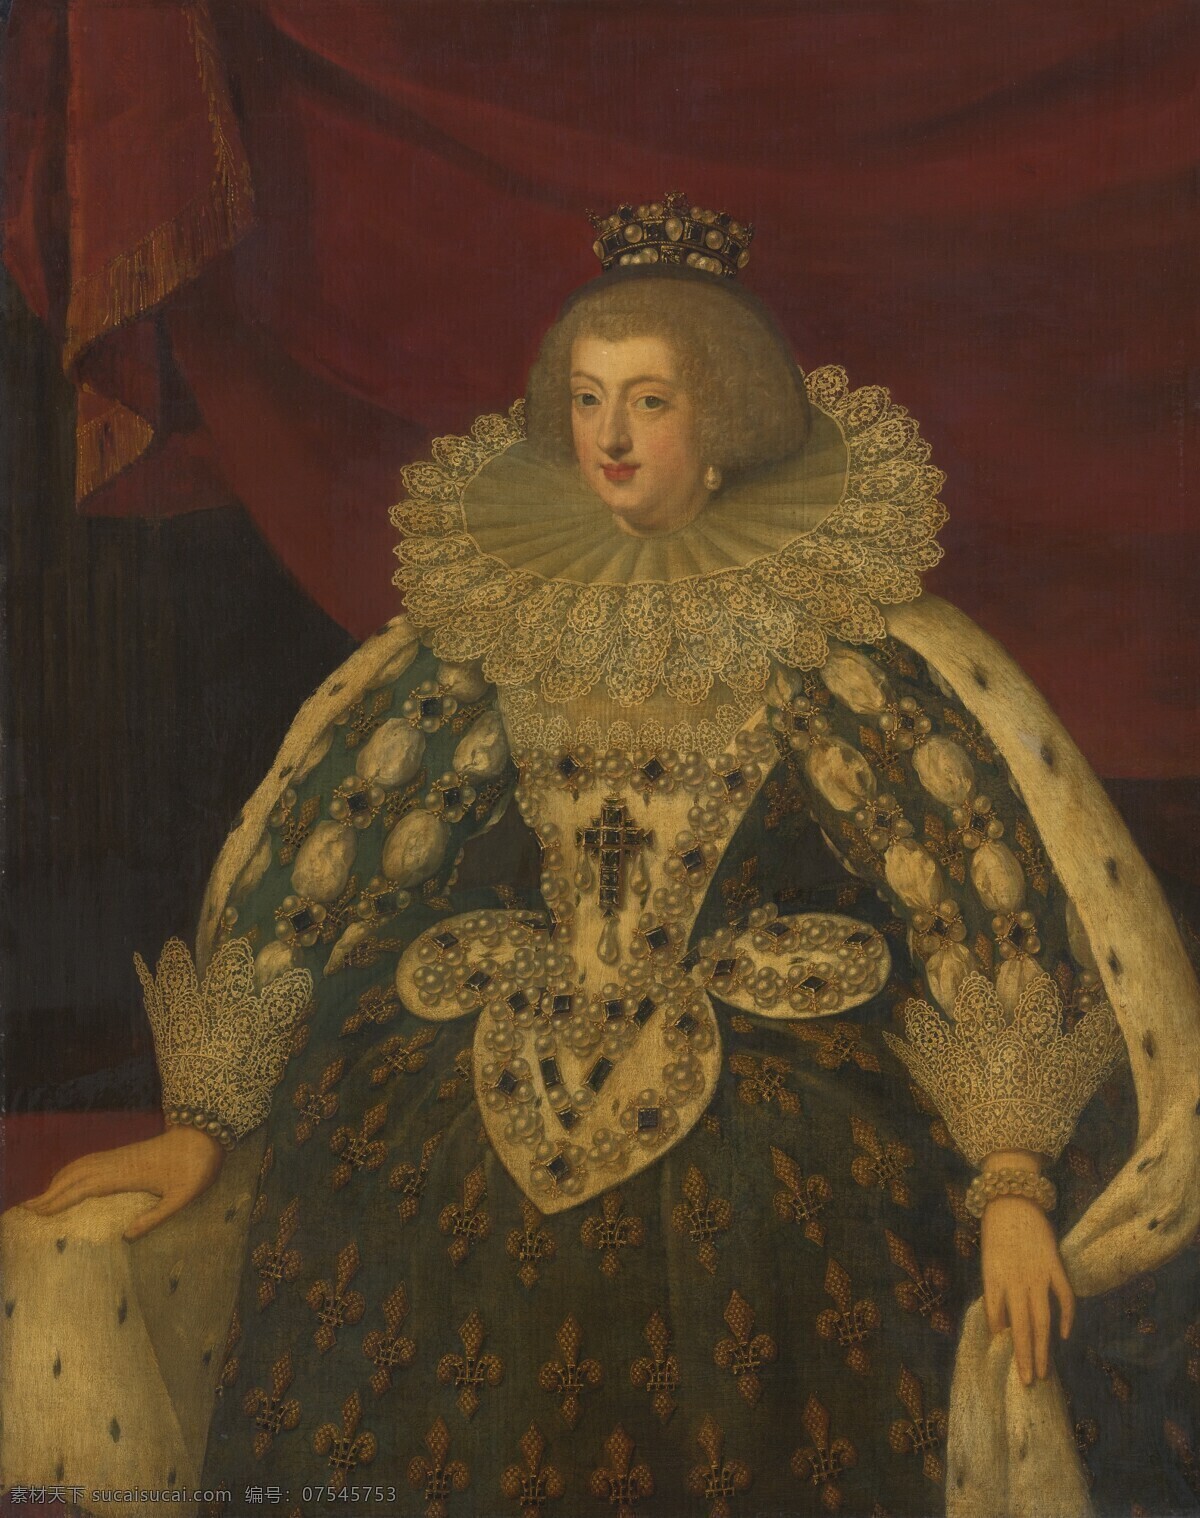 绘画书法 文化艺术 油画 奥地利 安娜 设计素材 模板下载 奥地利的安娜 西班牙公主 菲利普 三世 长女 法国王后 路易十三之妻 路易十四生母 巴洛克 时代 装饰素材